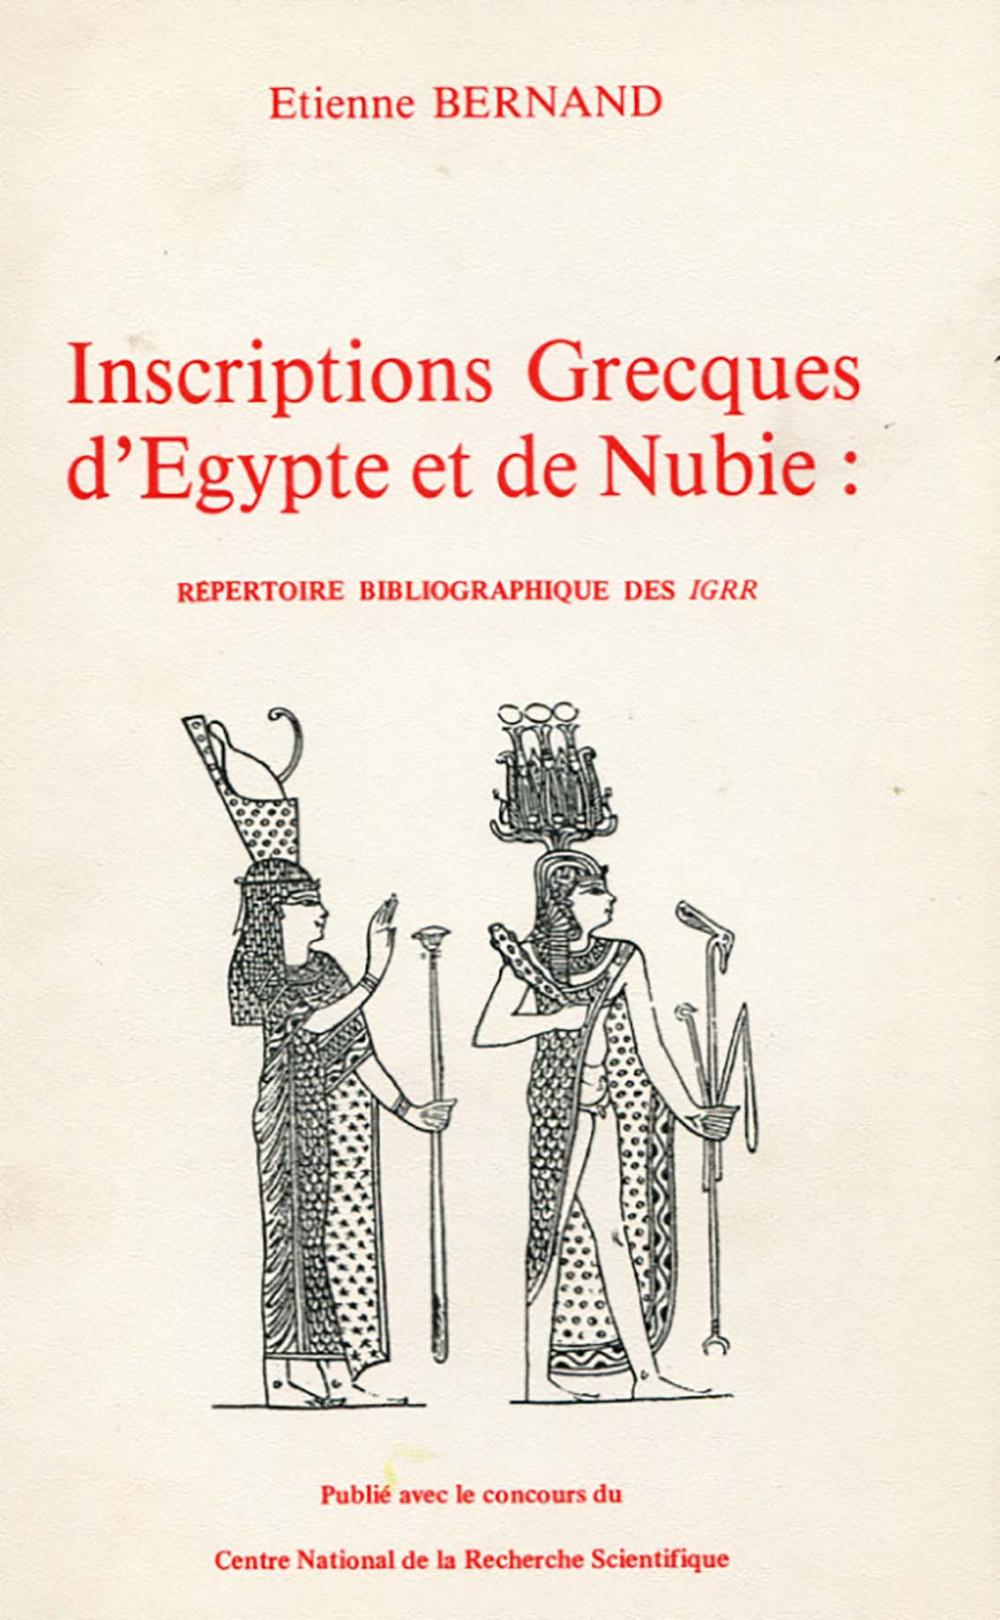 Inscriptions Grecques d'Egypte et de Nubie : répertoire bibliographique des IGRR